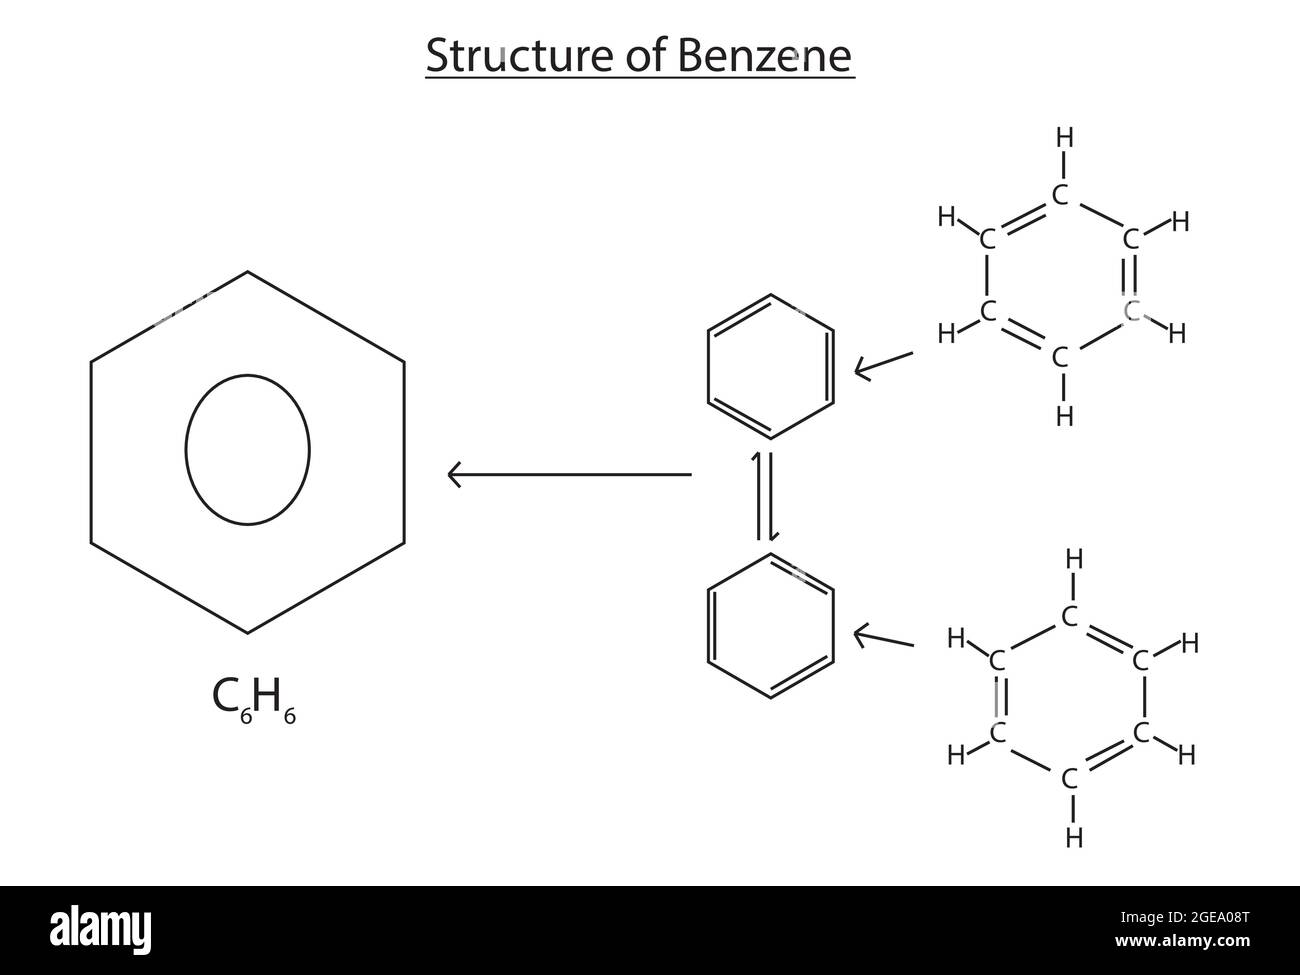 Chemische Struktur von Benzol, Anatomie von Benzol, Molekulare Struktur von Benzol, Chemische Formel von Benzol, Benzolformel, Benzolstruktur Stock Vektor